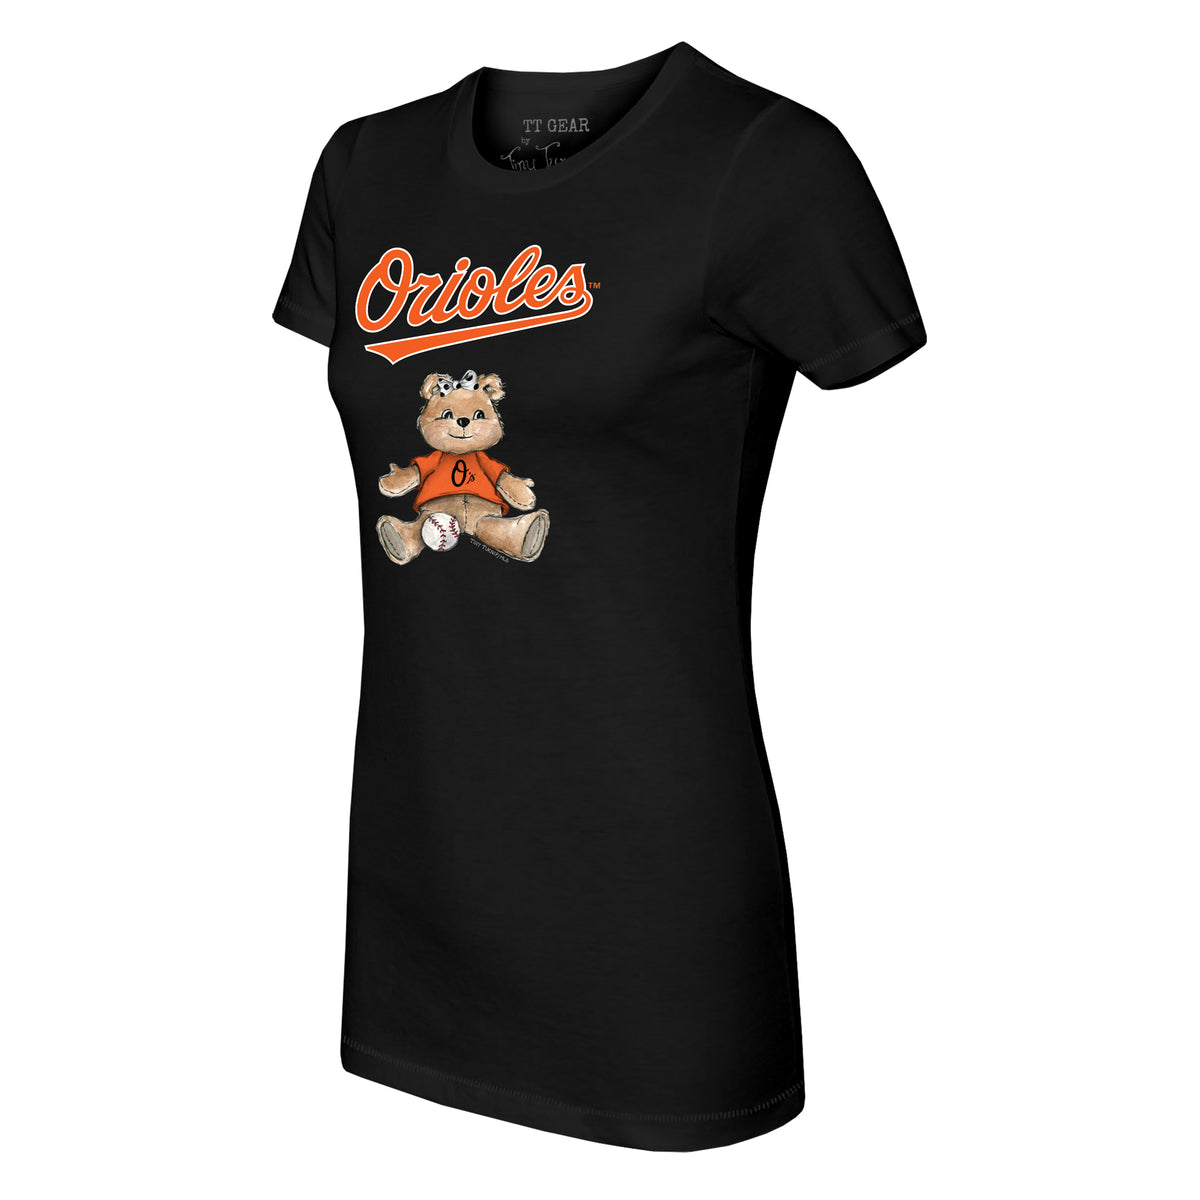 Baltimore Orioles Girl Teddy Tee Shirt